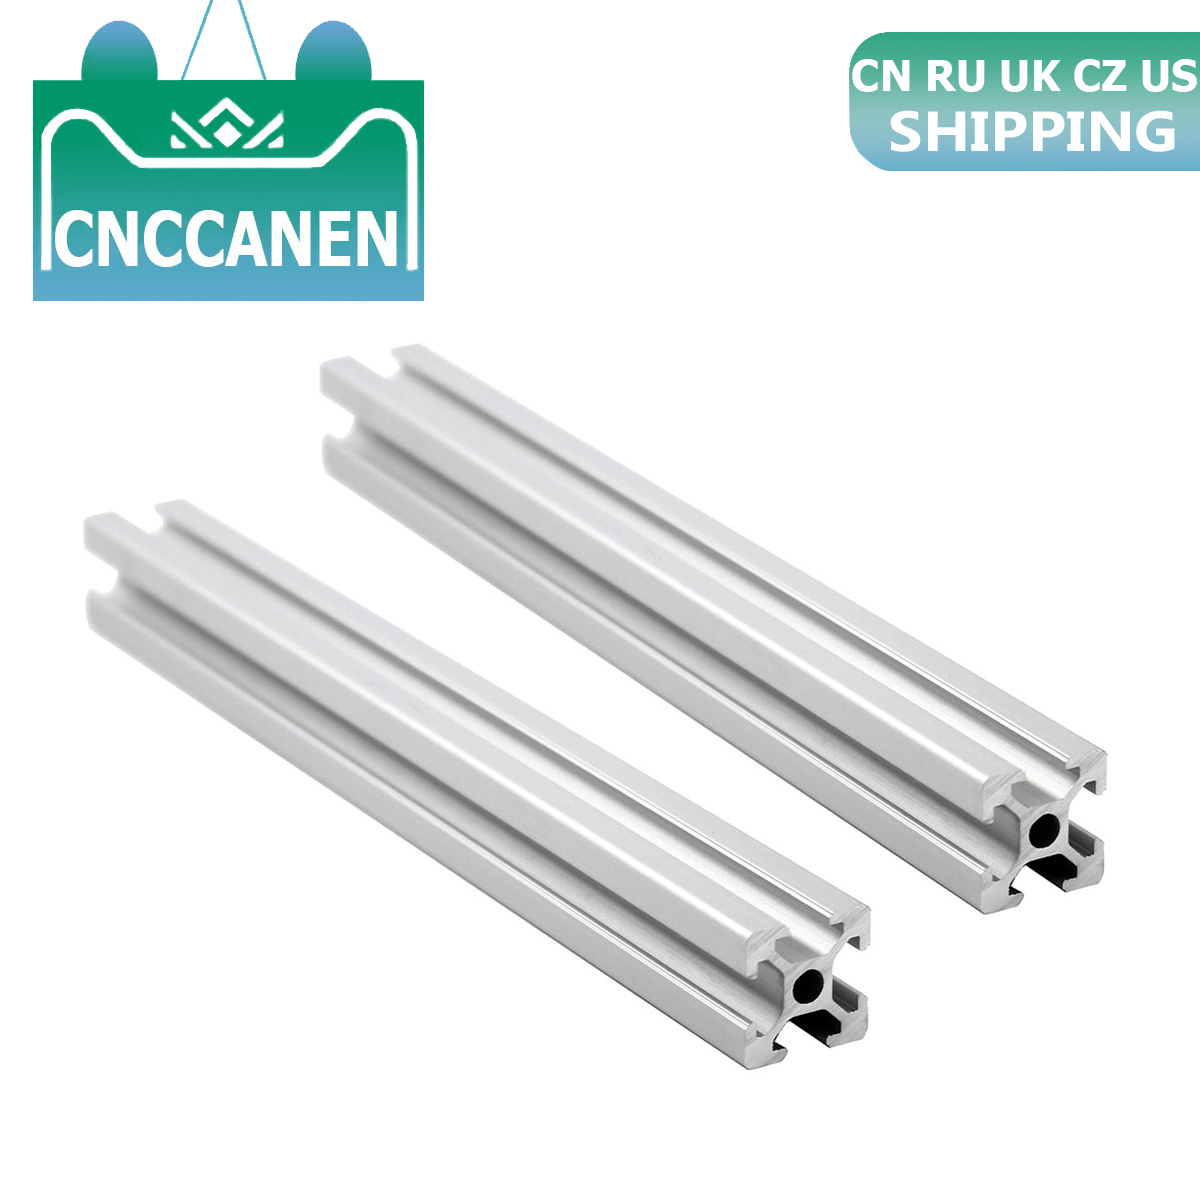 2PCS 2020 Aluminum Profile Extrusion 2020 European Standard Linear Rail 100mm to 2000mm Length for CNC 3D Printer Parts CZ UK US